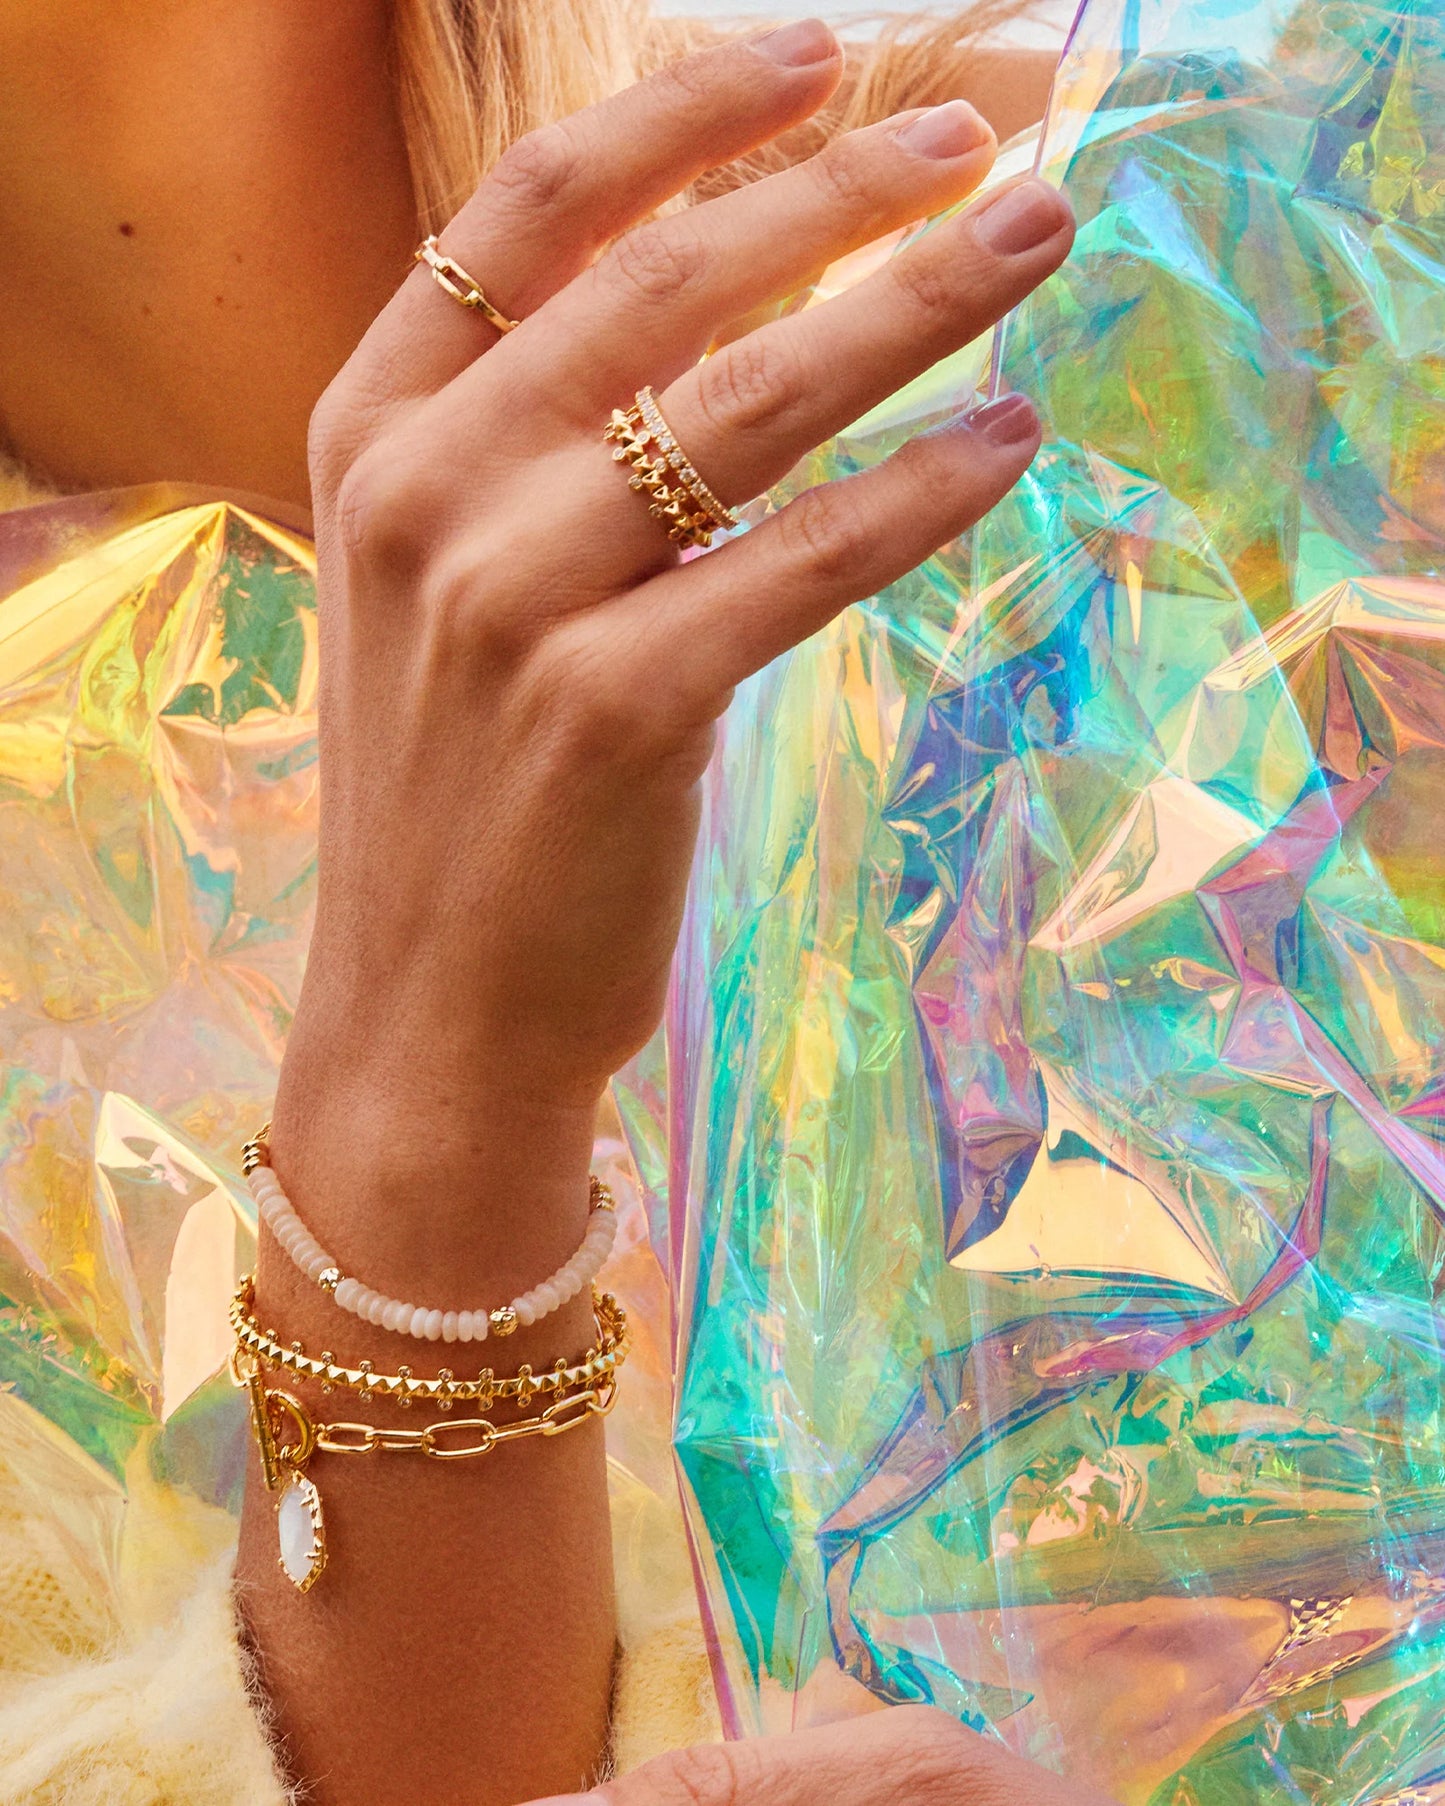 Kendra Scott Deliah Gold Delicate Chain Bracelet (3 colors)